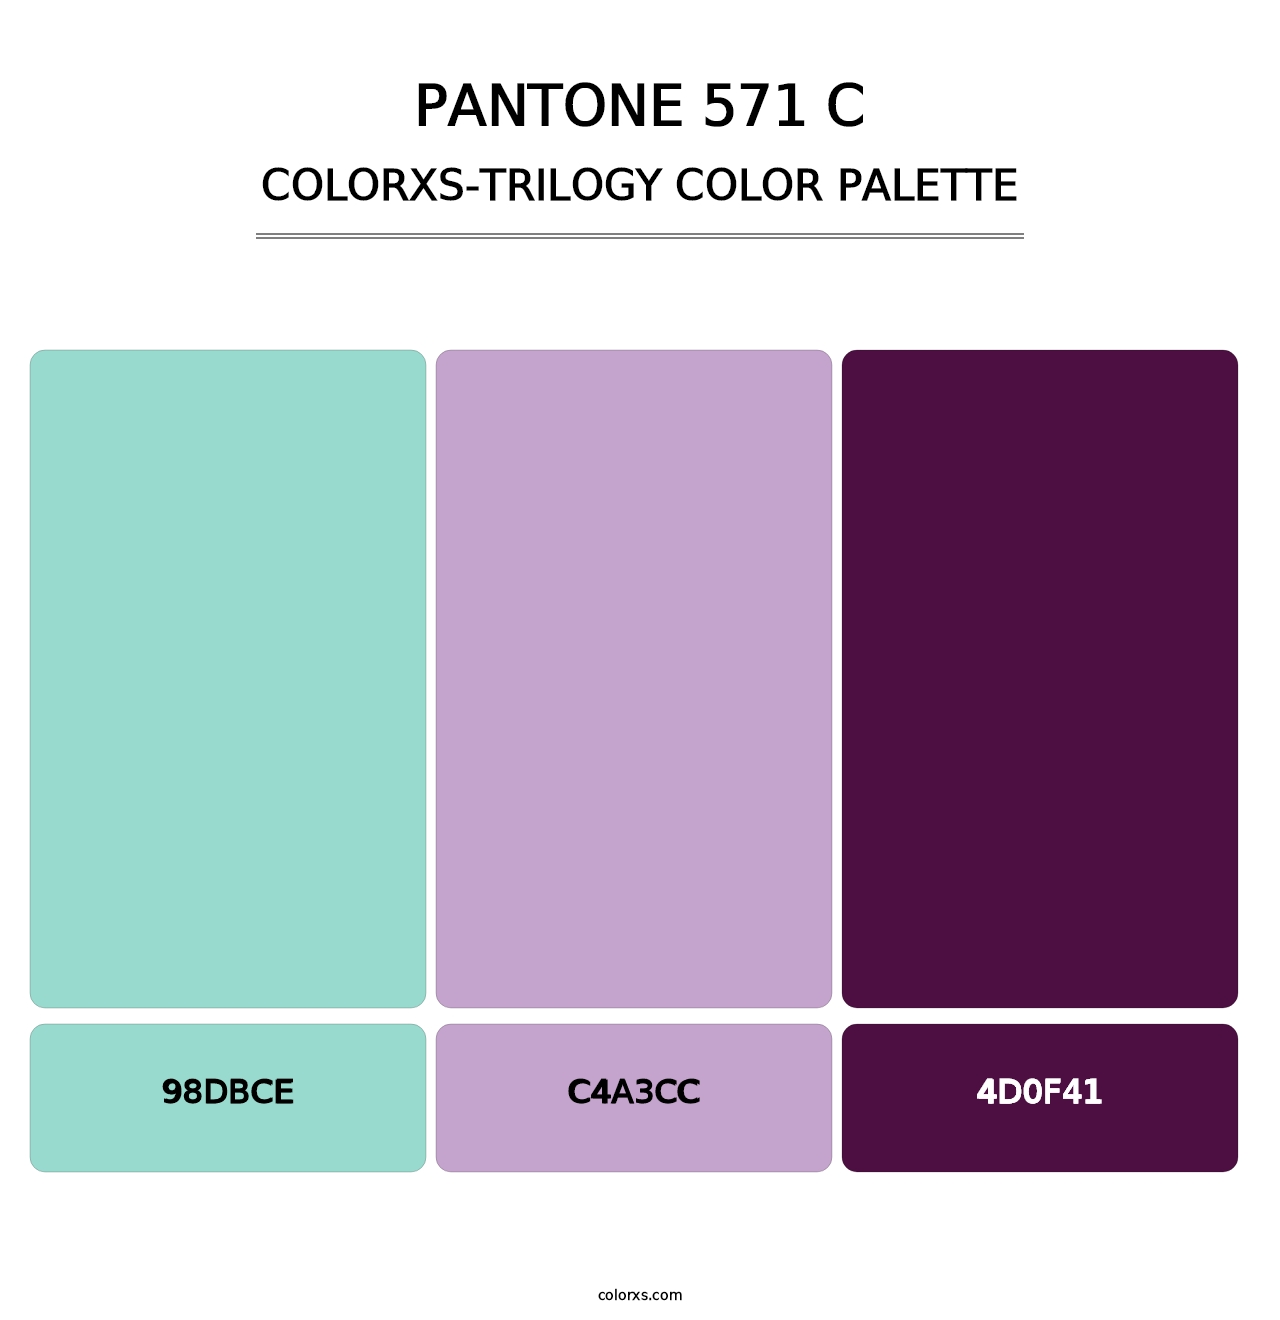 PANTONE 571 C - Colorxs Trilogy Palette